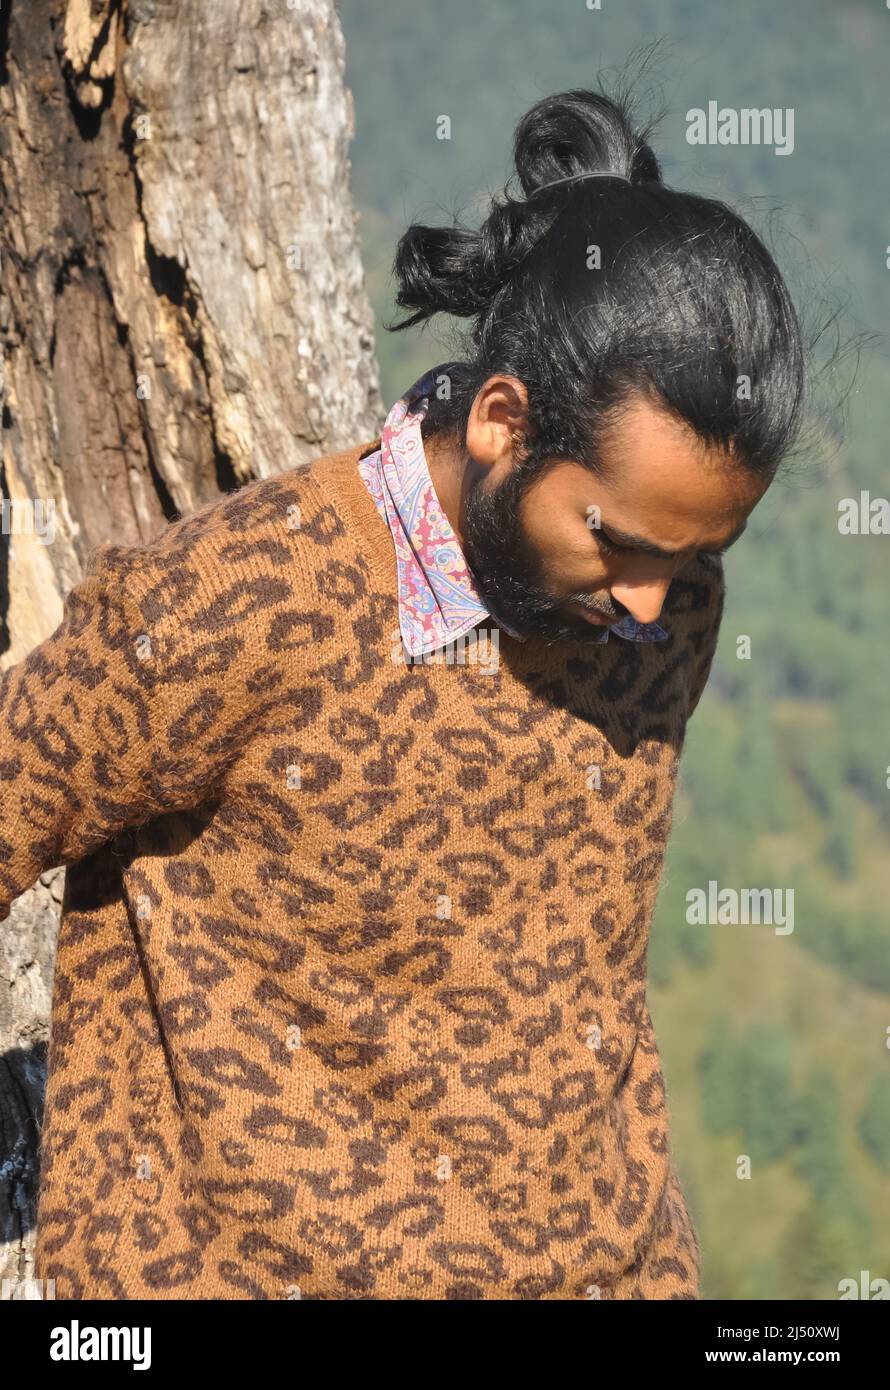 Nahaufnahme eines gut aussehenden indischen jungen Mannes mit einem Haarbüschen, das nach unten schaut, während er sich an einen Baum lehnt Stockfoto